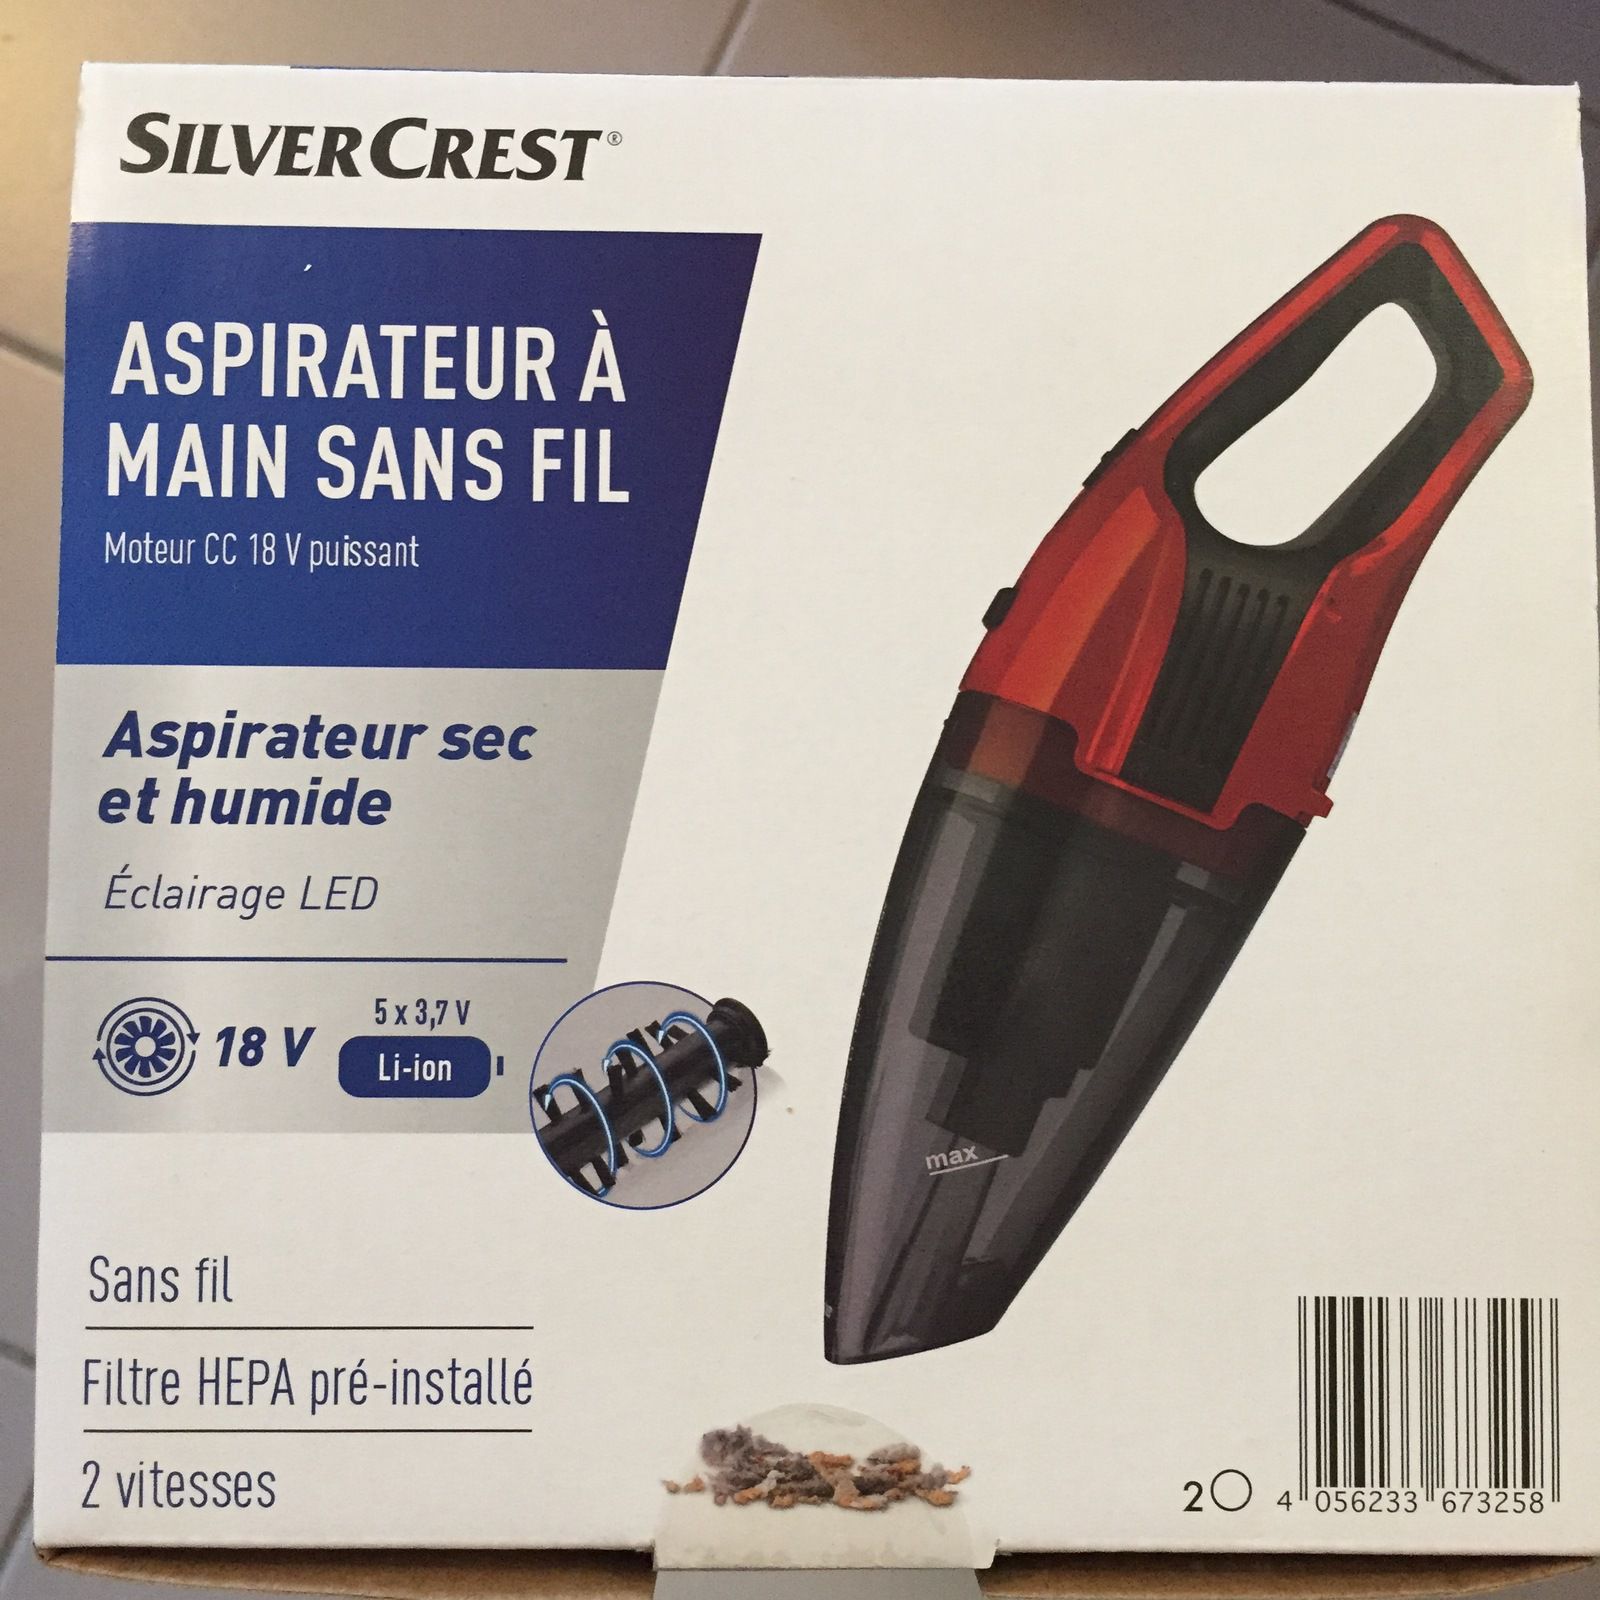 Mini aspirateur sans fil lidl Silver Crest - CharlotteBlaBla